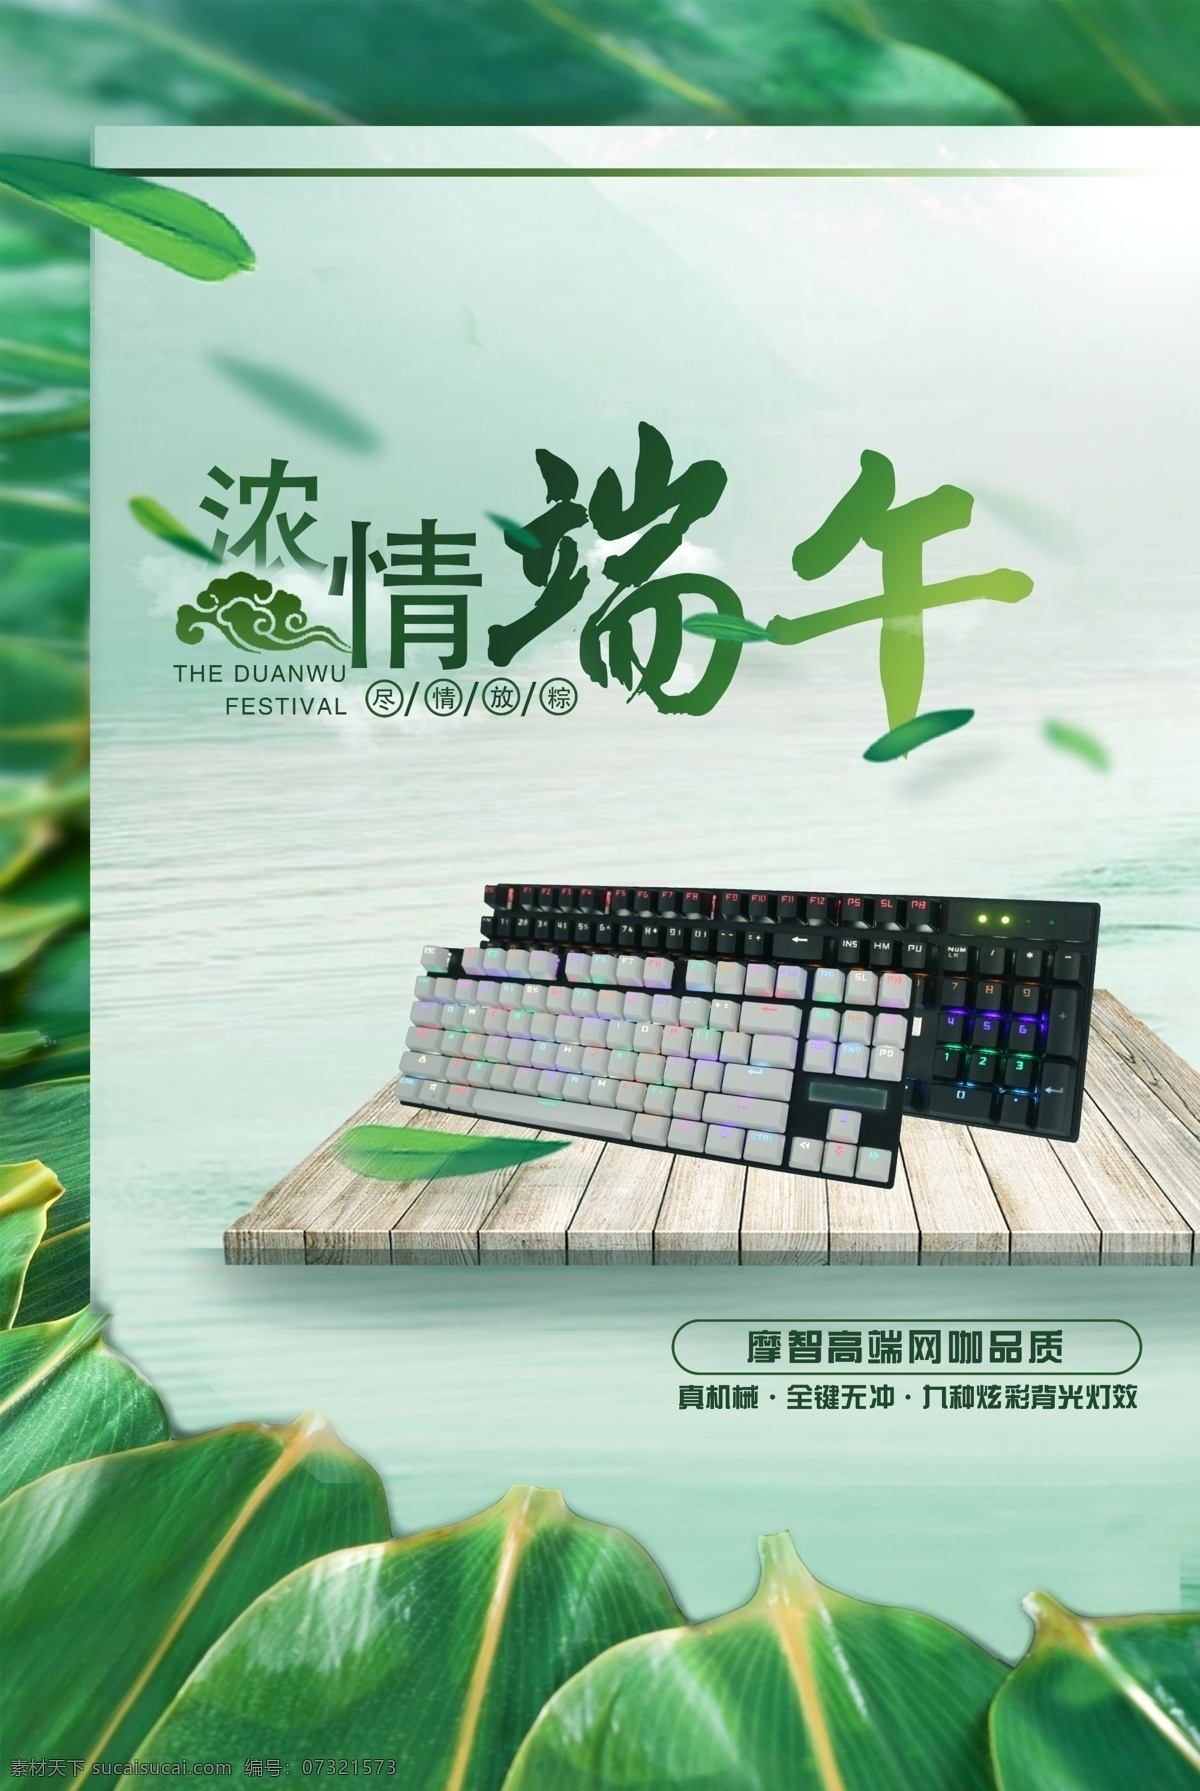 端午节 摩 智 机械 键盘 海报 键鼠 键盘海报